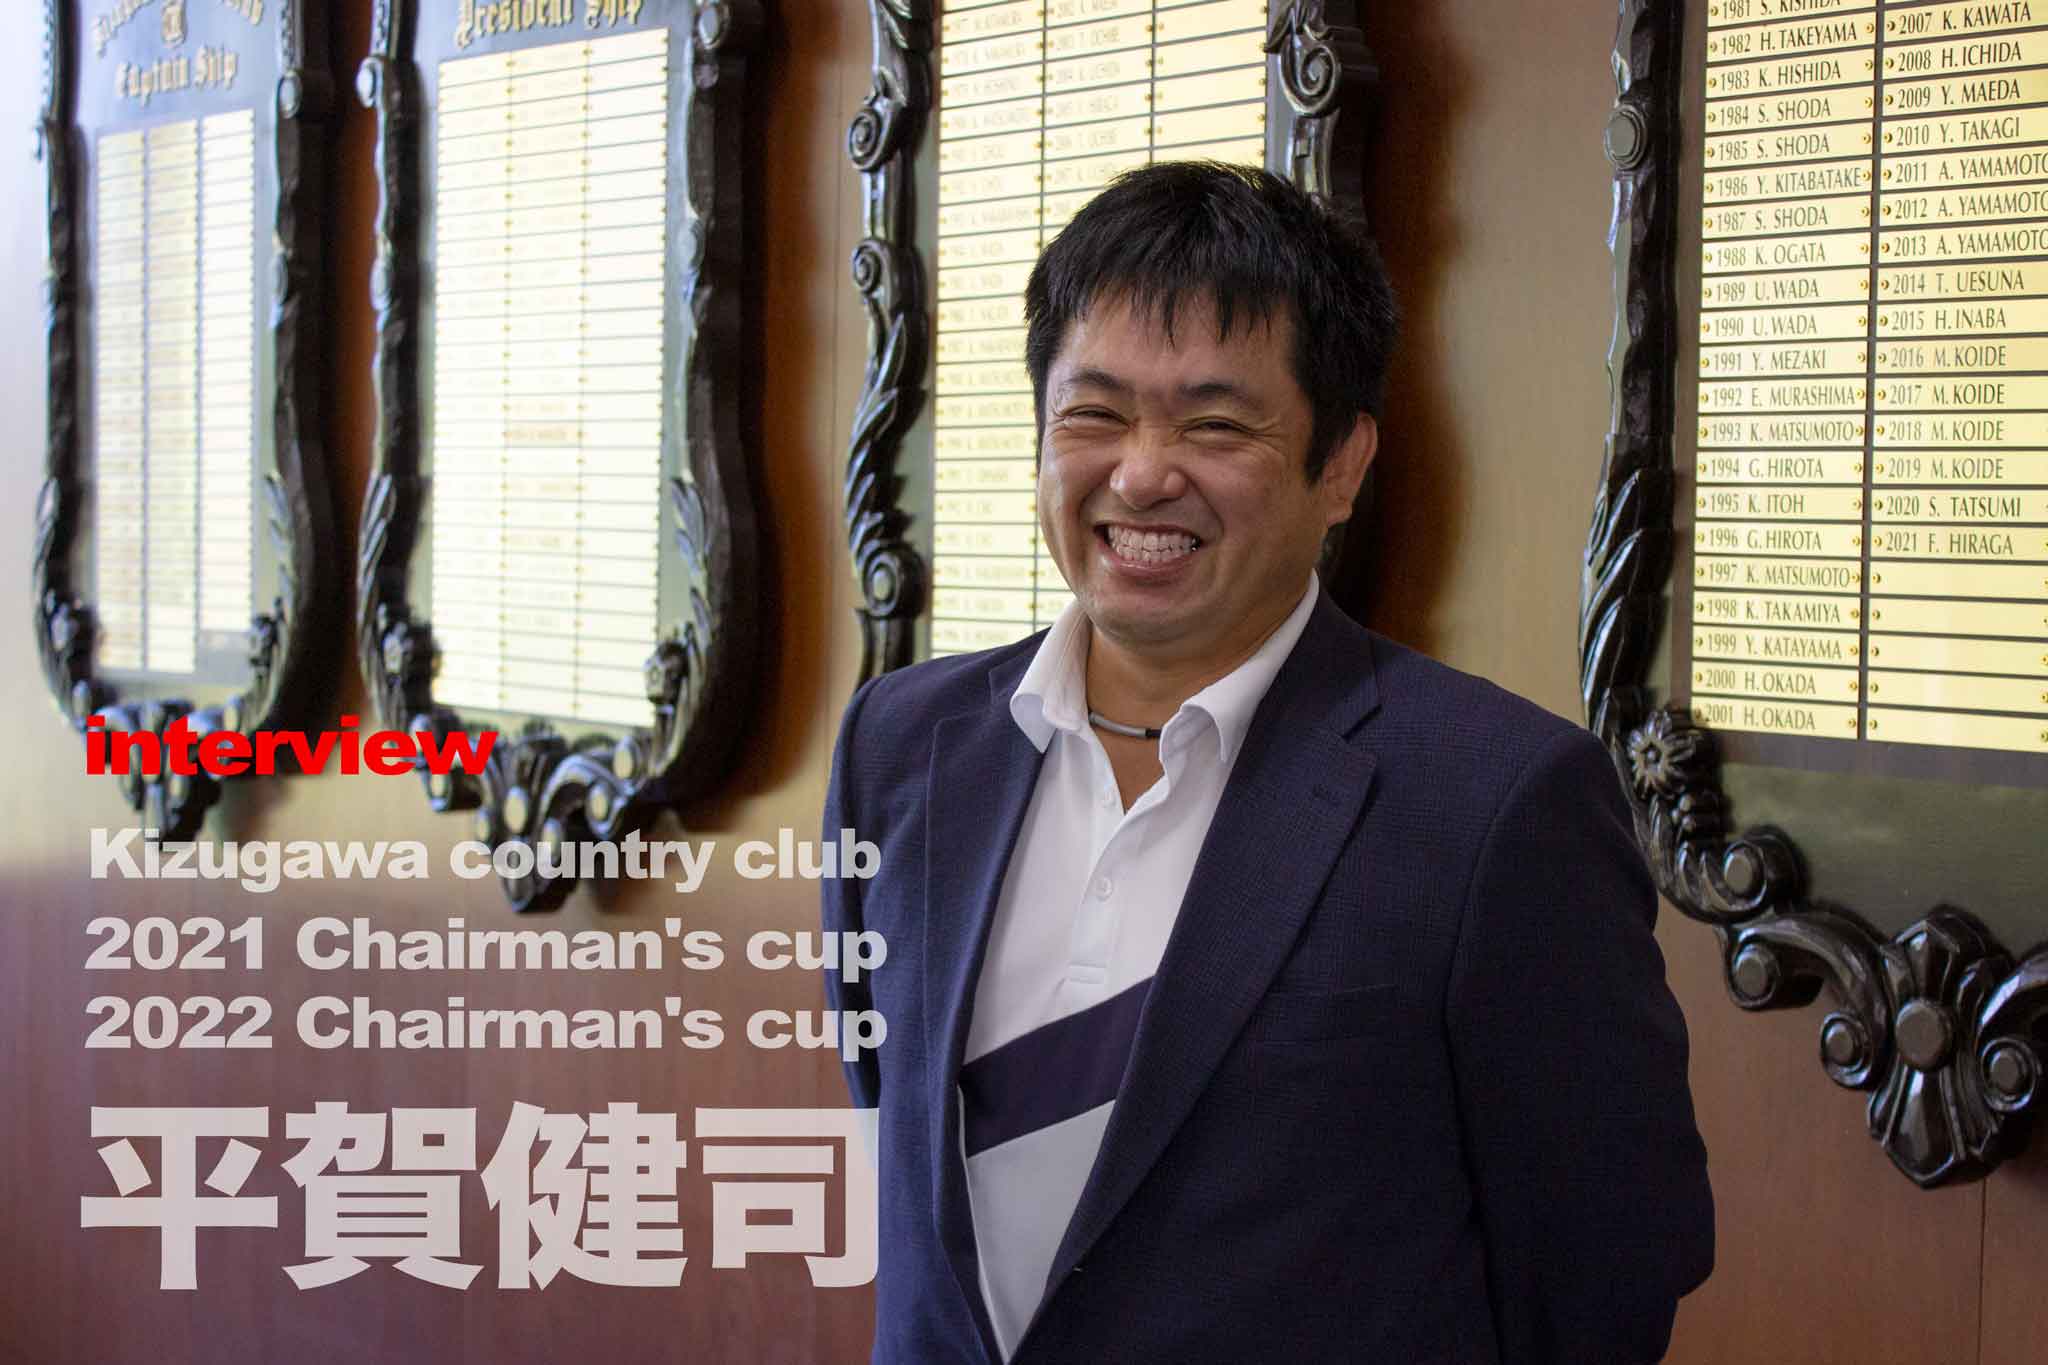 関西ゴルフサークル セブンエイトの理事長杯獲得の平賀健司インタビューの扉